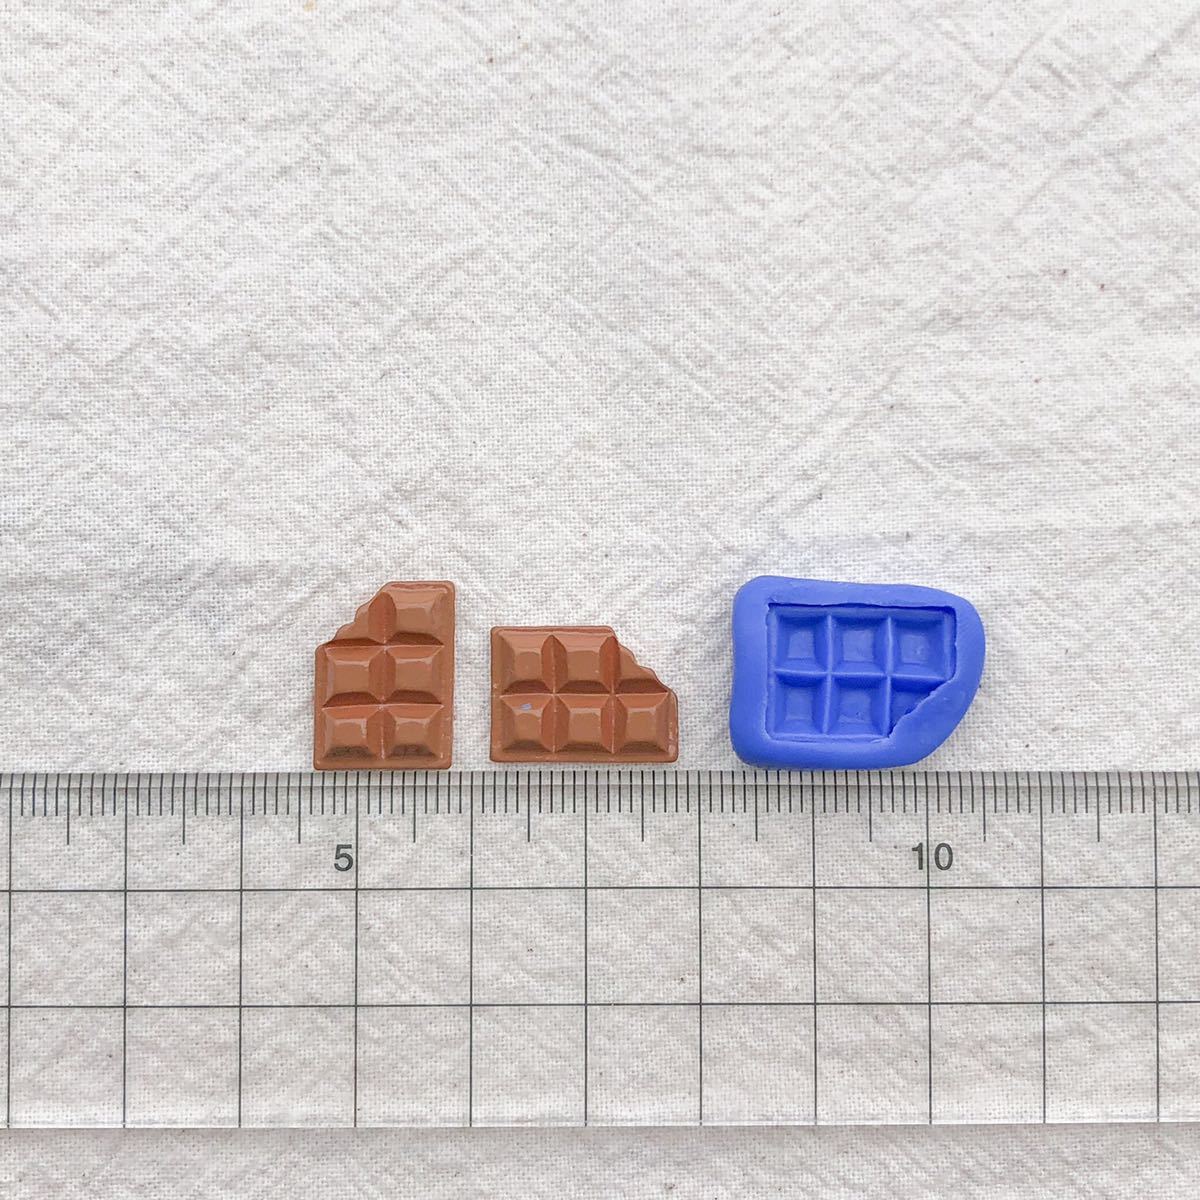 196 食べかけ チョコレート型 デコ パーツ 樹脂粘土 チョコ モールド 板チョコ ブルーミックス シリコン ハンドメイド ミニチュア_画像2